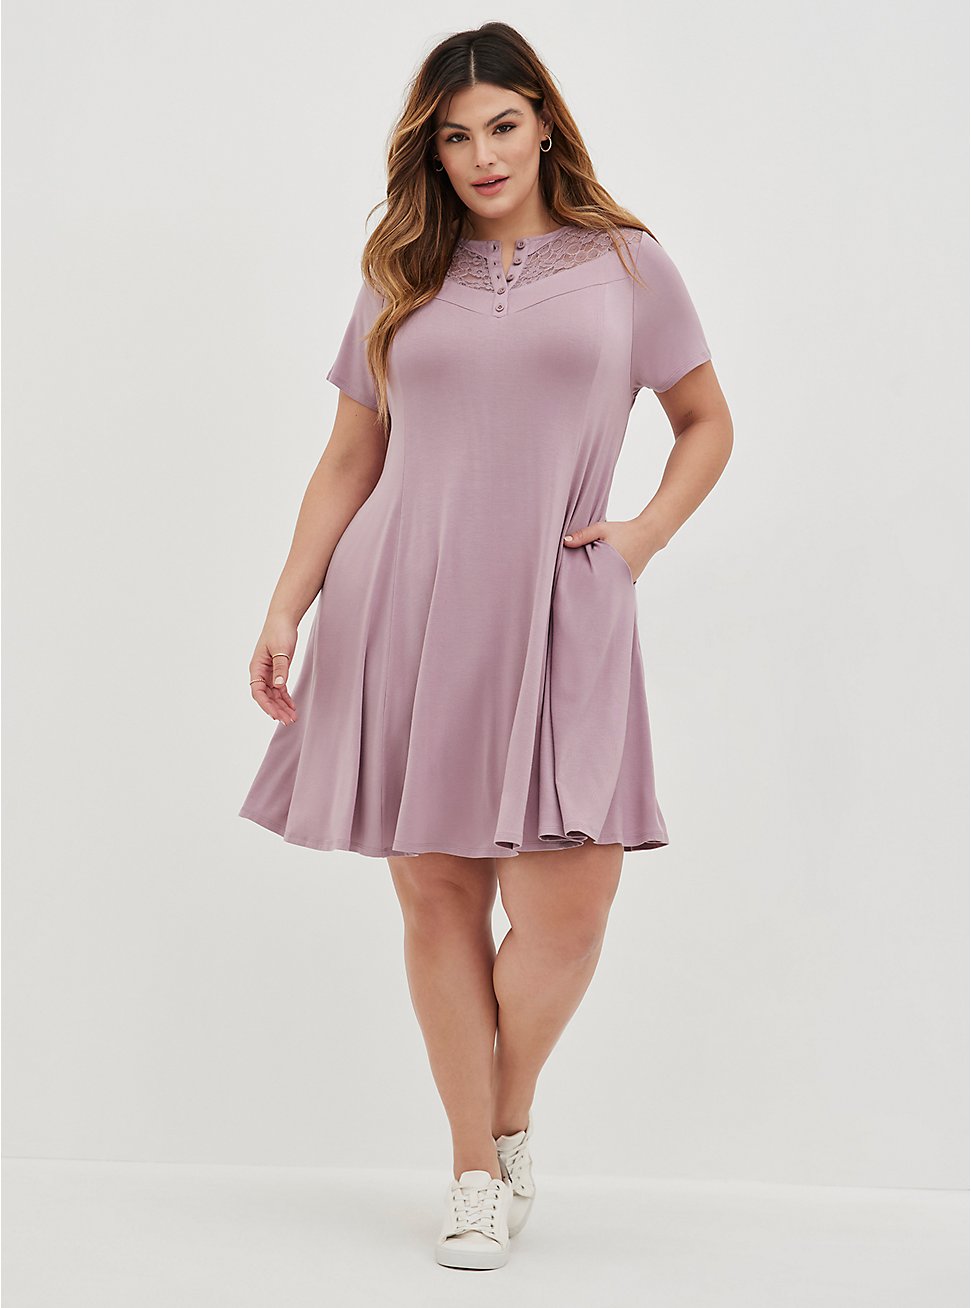 Plus Size Lace Inset Trapeze Dress - Super Soft Purple, PURPLE, hi-res